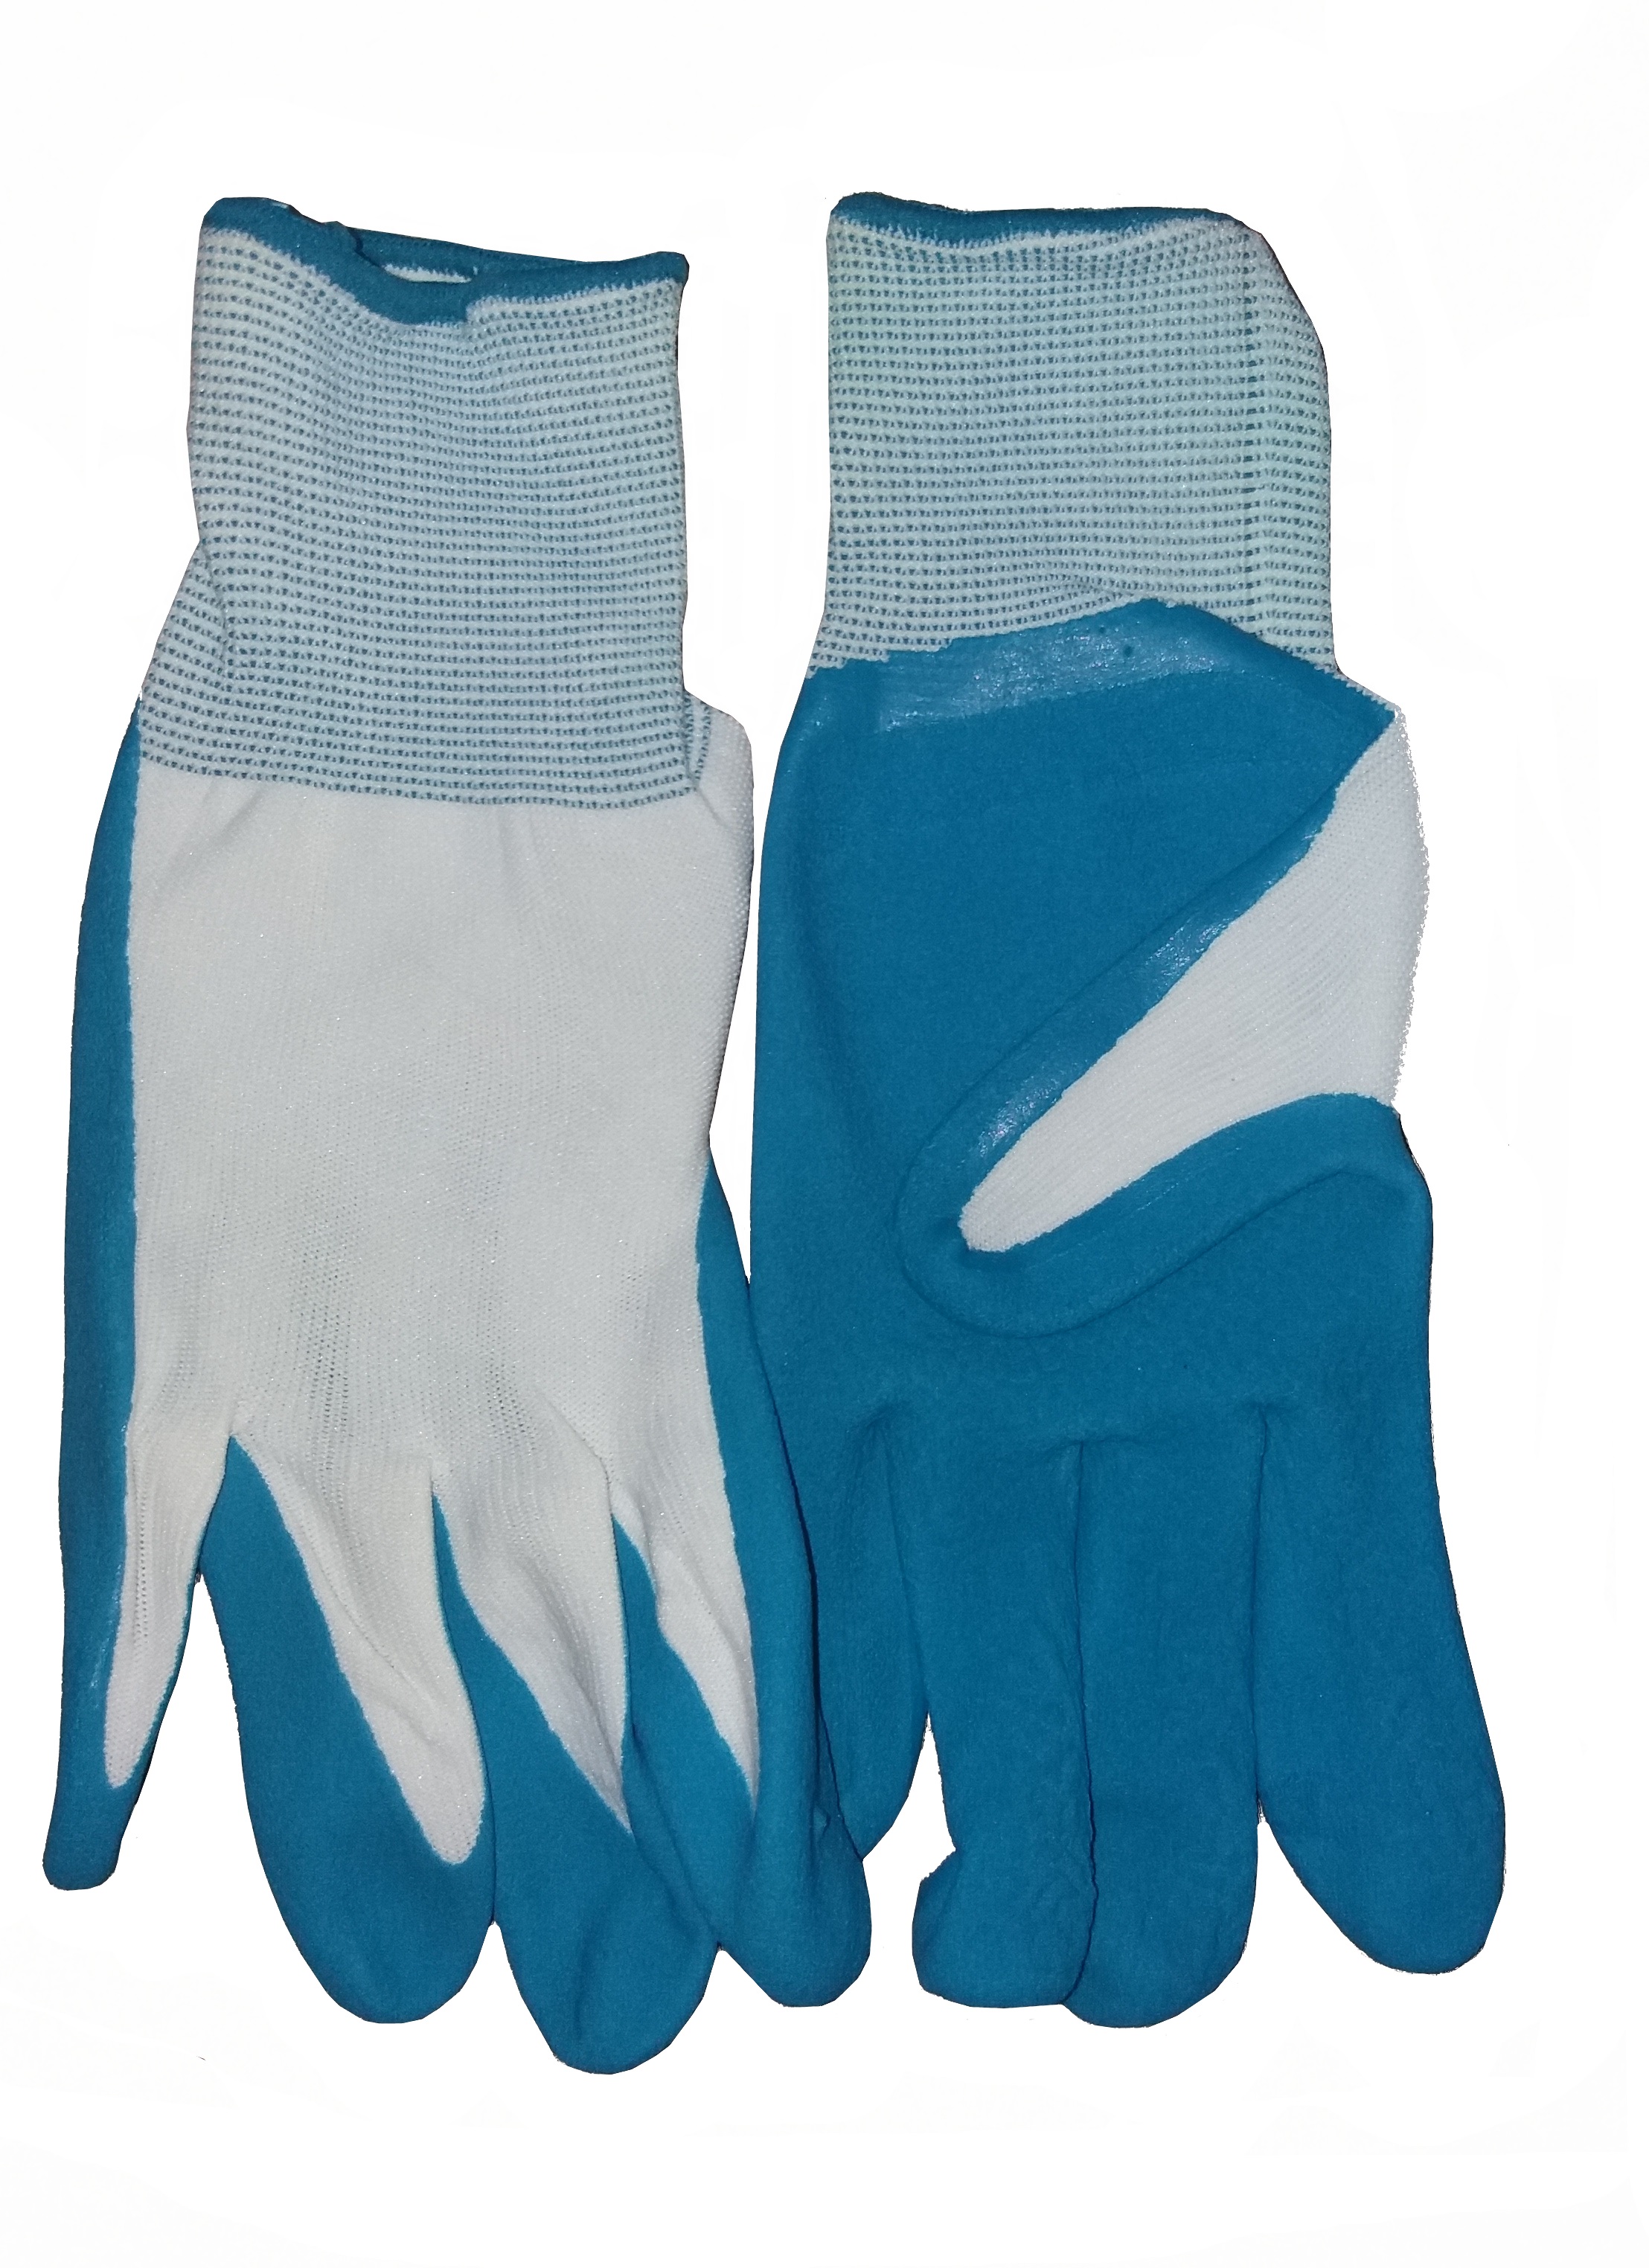 Feldtmann NYLON Strickhandschuhe Arbeitshandschuhe TANSHUI Latexhandschuhe Beschichtung weiß blau